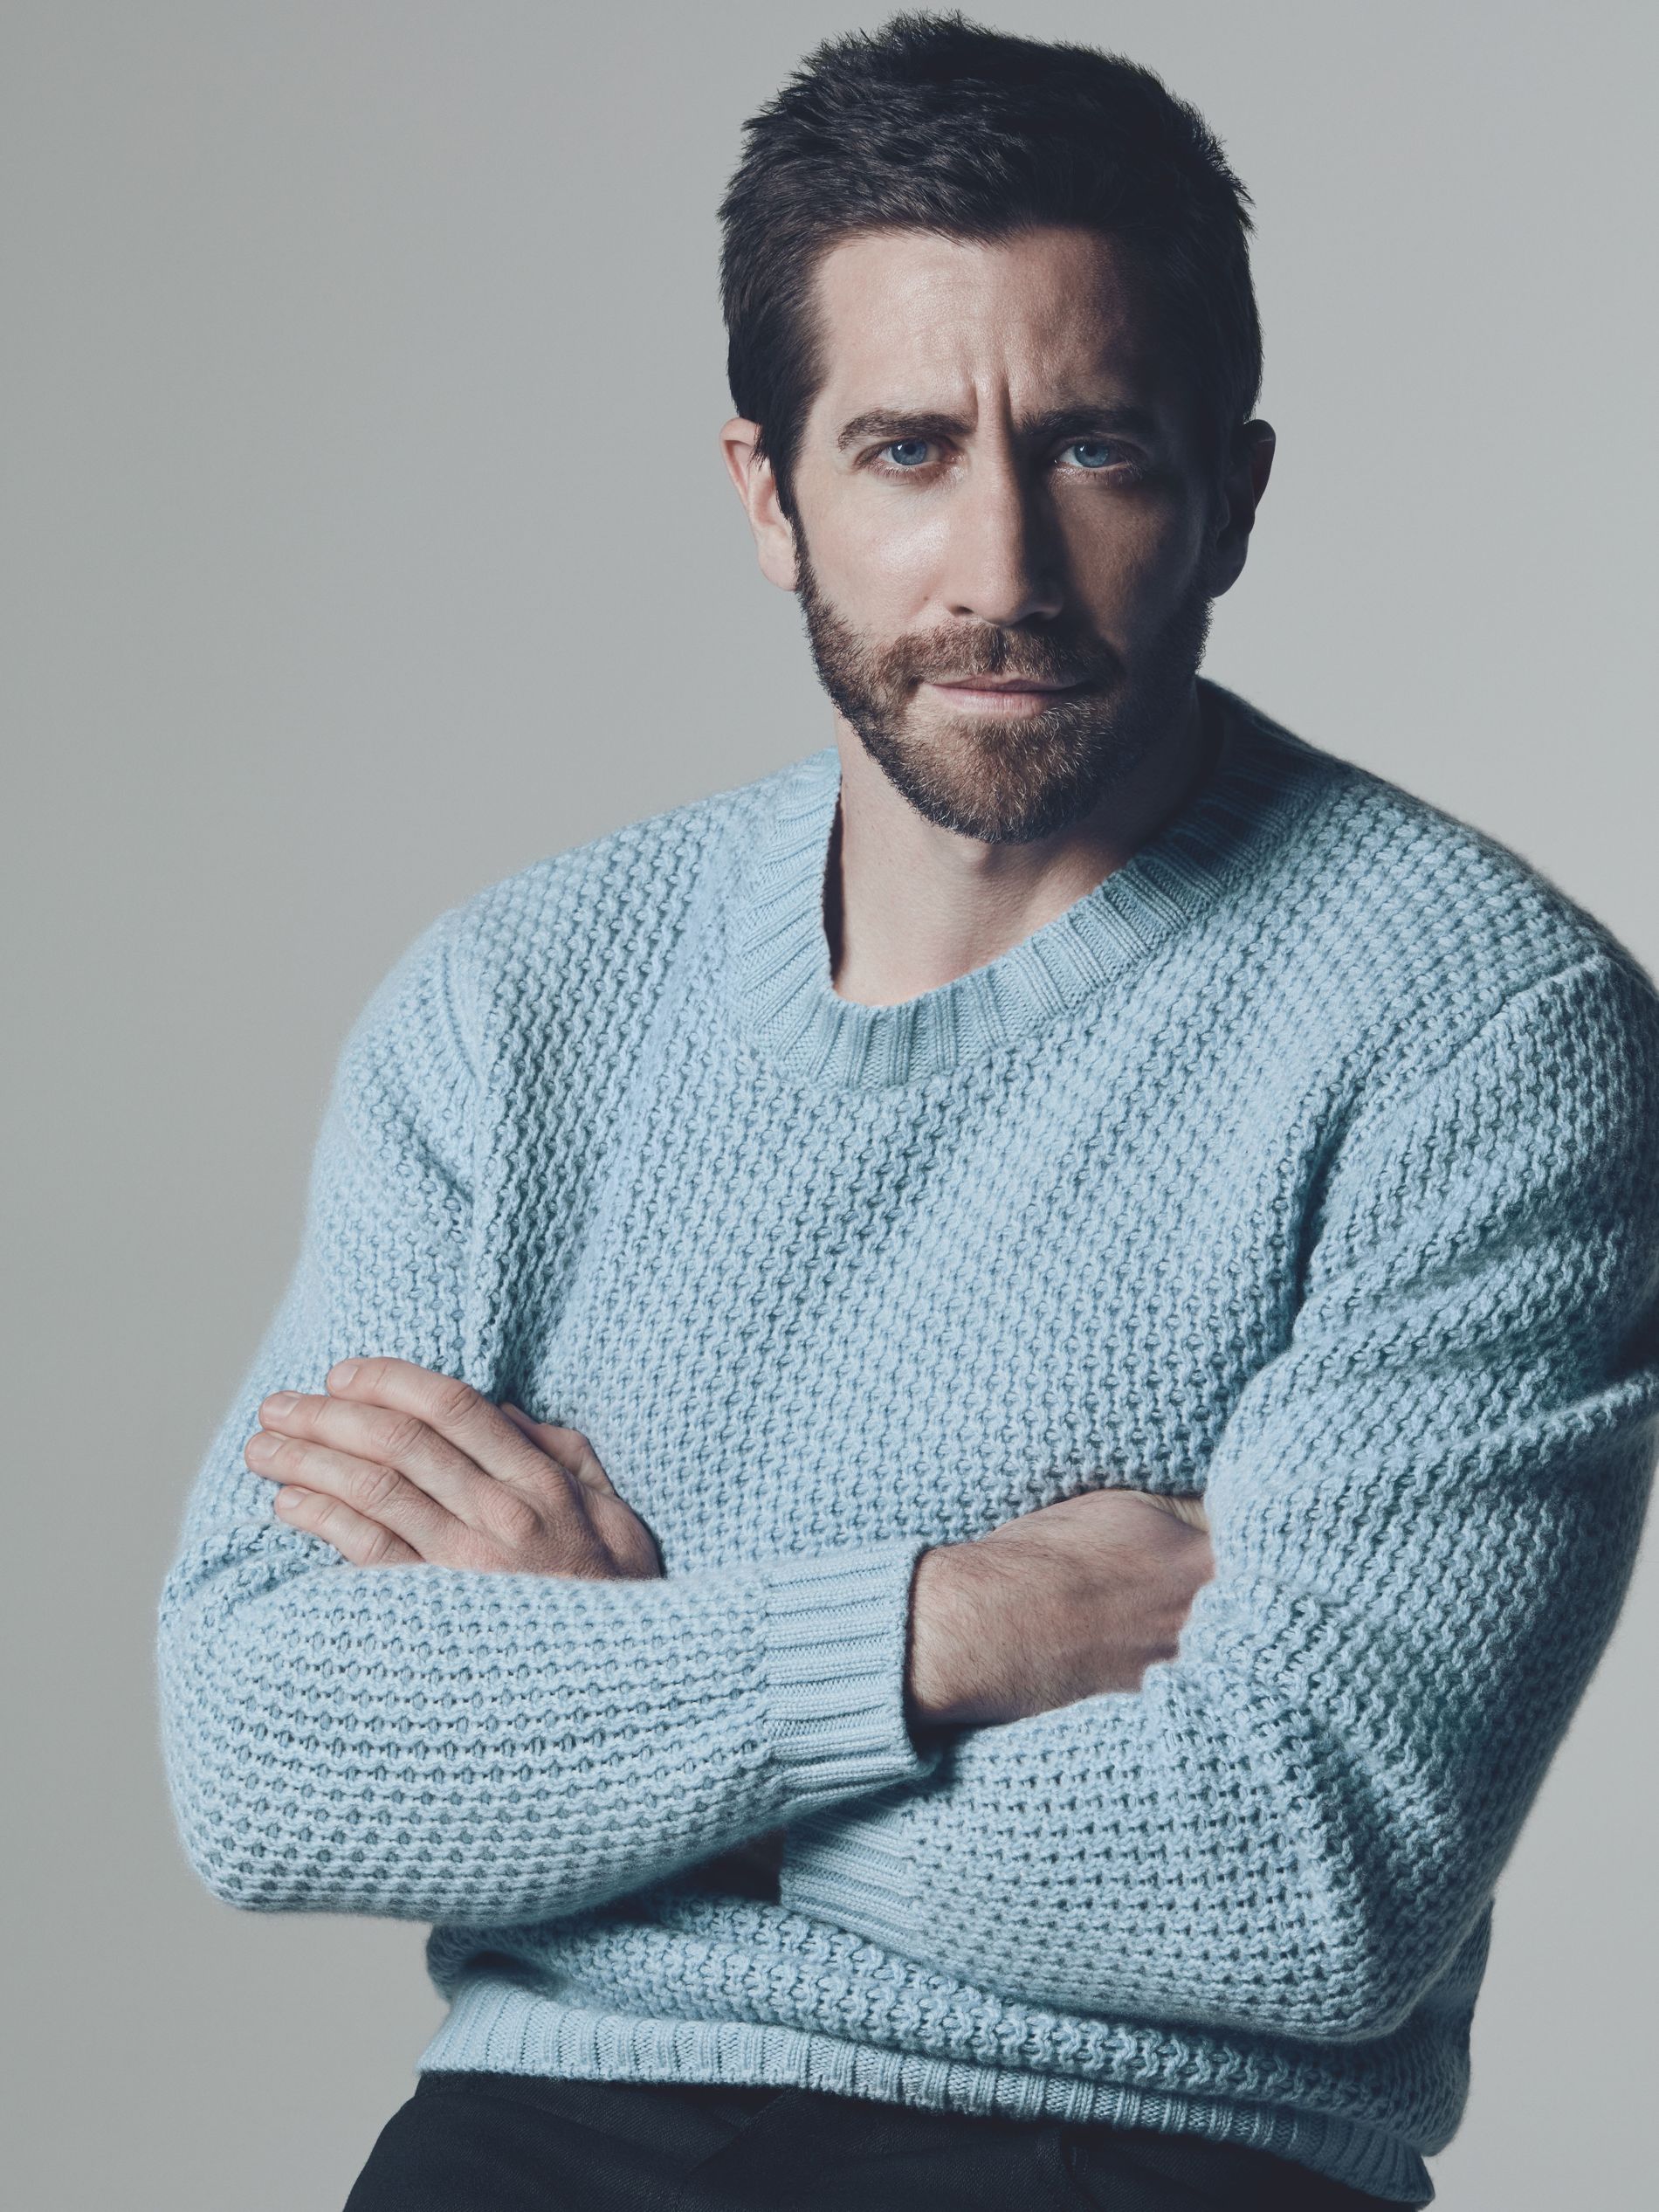 Jake Gyllenhaal for Prada